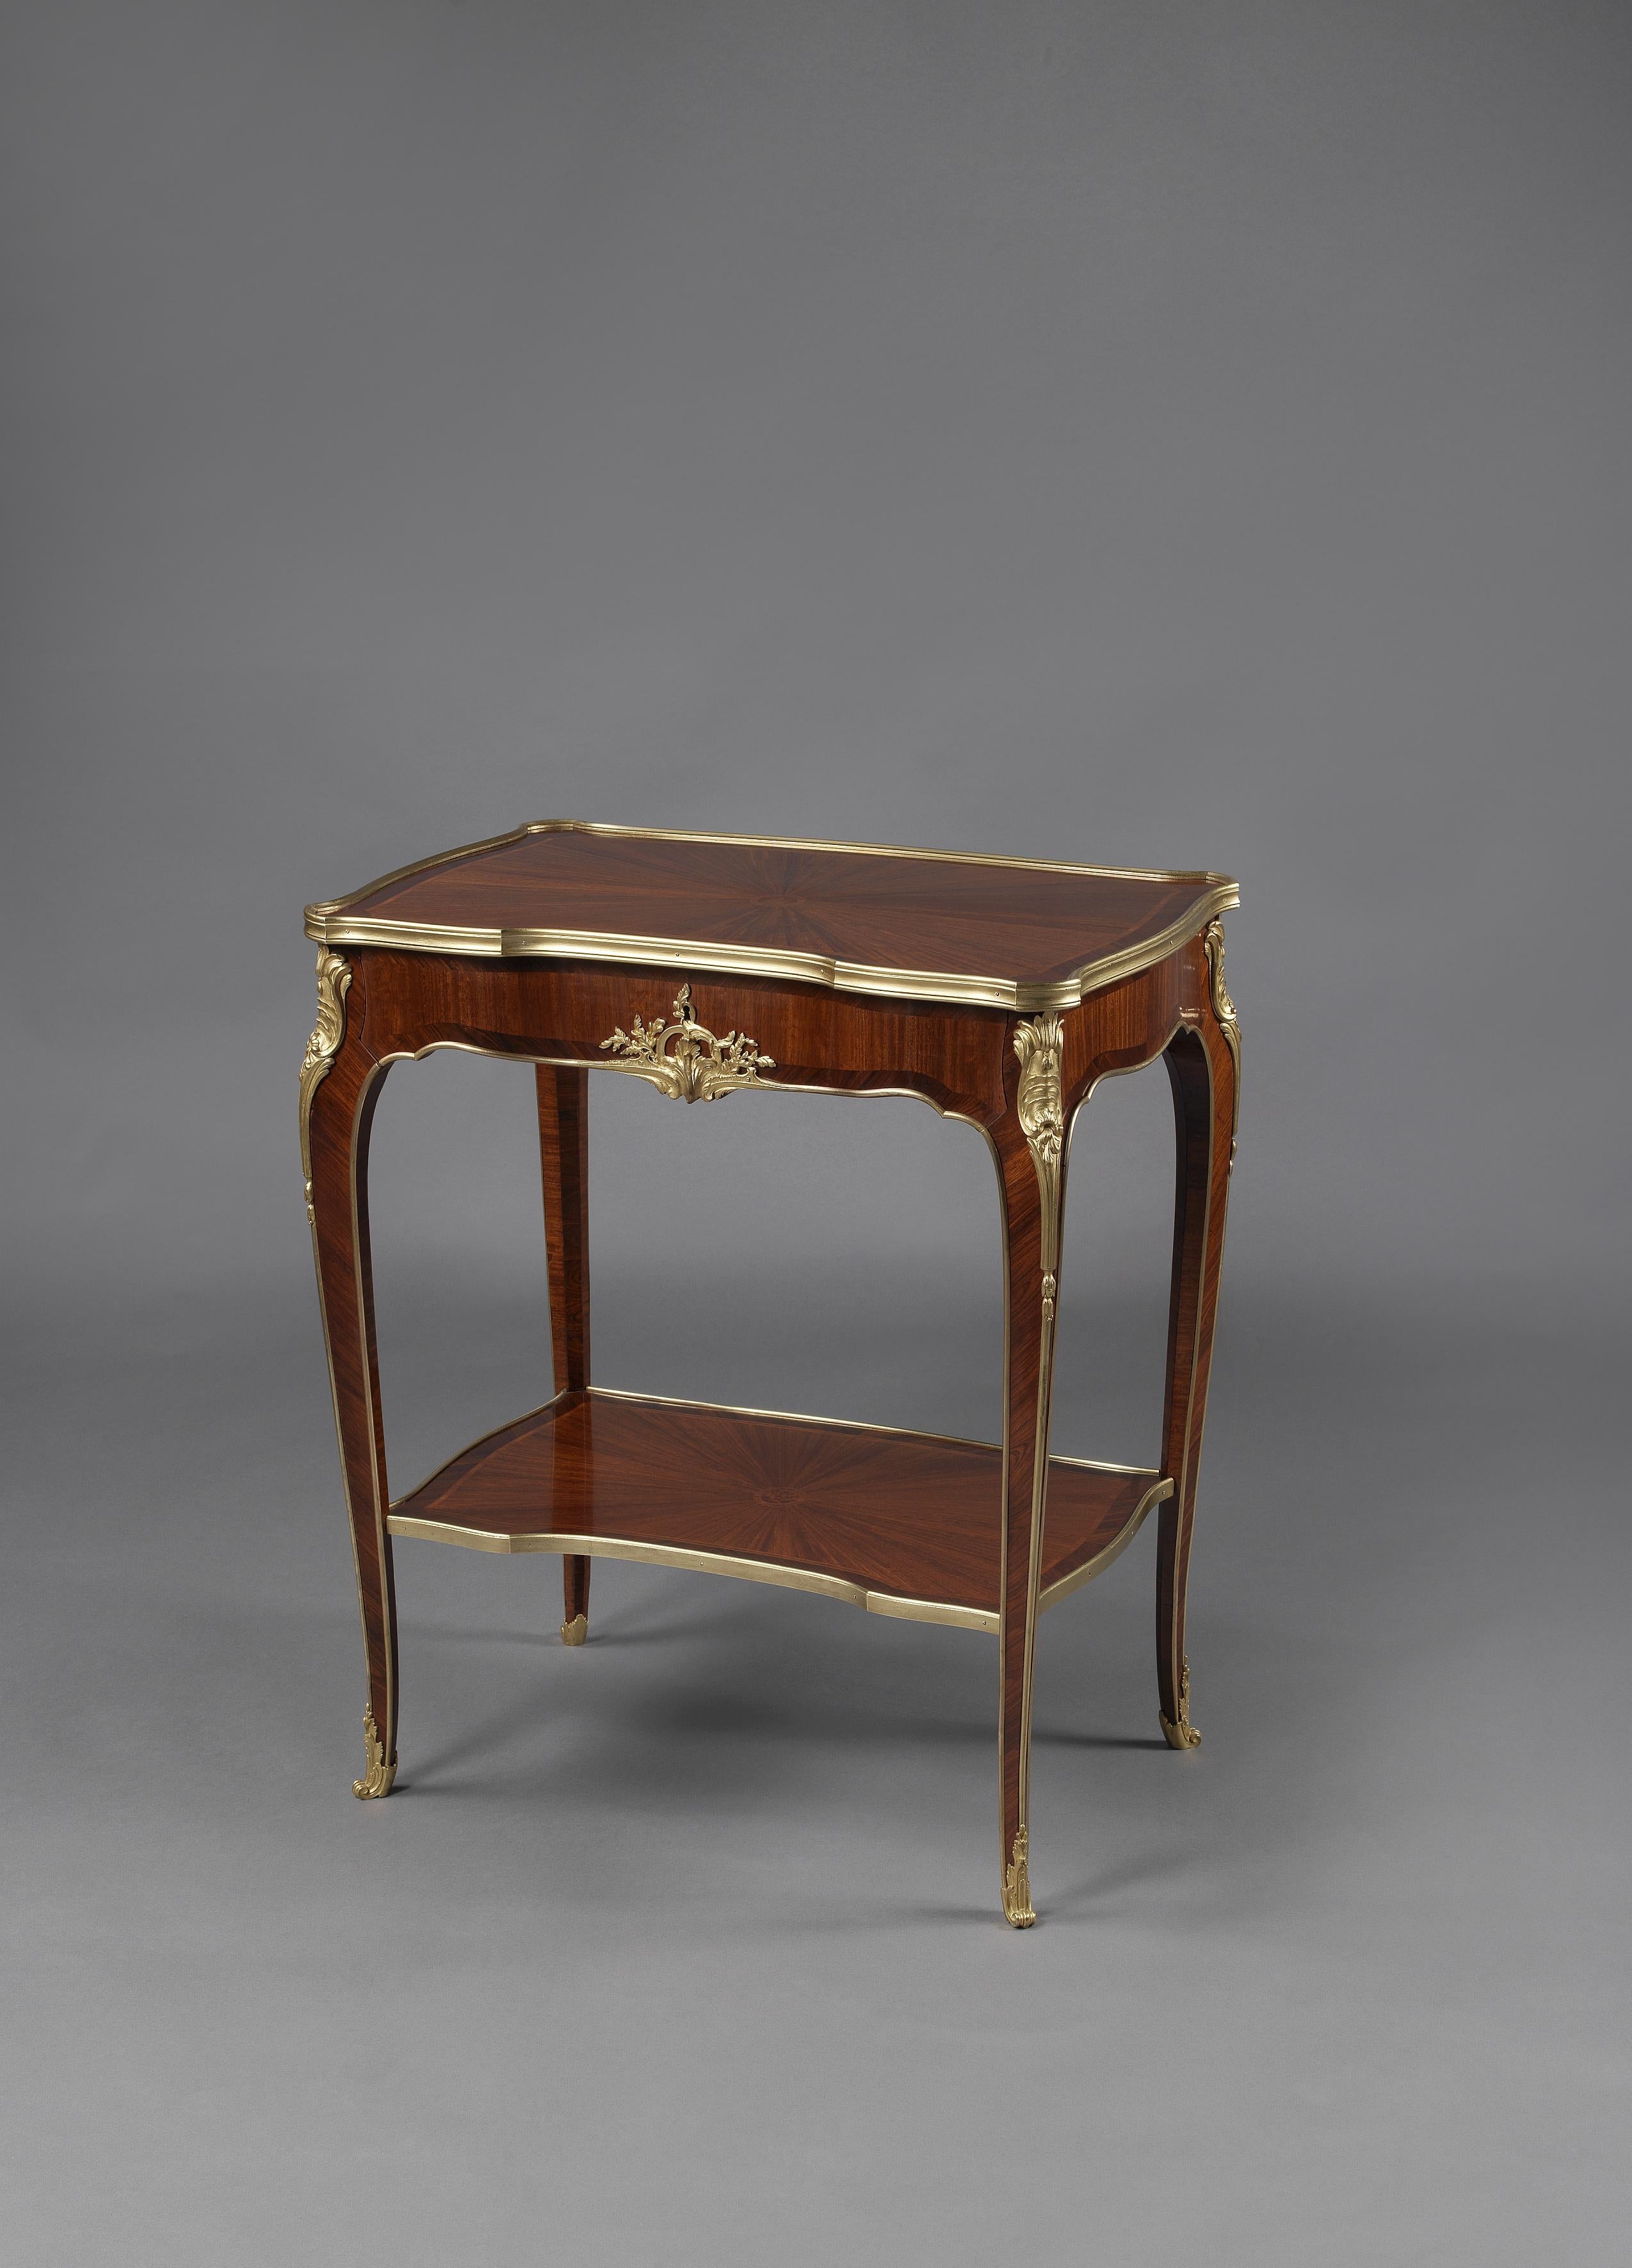 Table de salon de style Louis XV en marqueterie et bronze doré, Mercier Frères.

Français, vers 1900. 

Cette petite table de salon présente un plateau façonné à bandeau en bronze doré incrusté de parquet rayonnant au-dessus d'un tiroir en frise